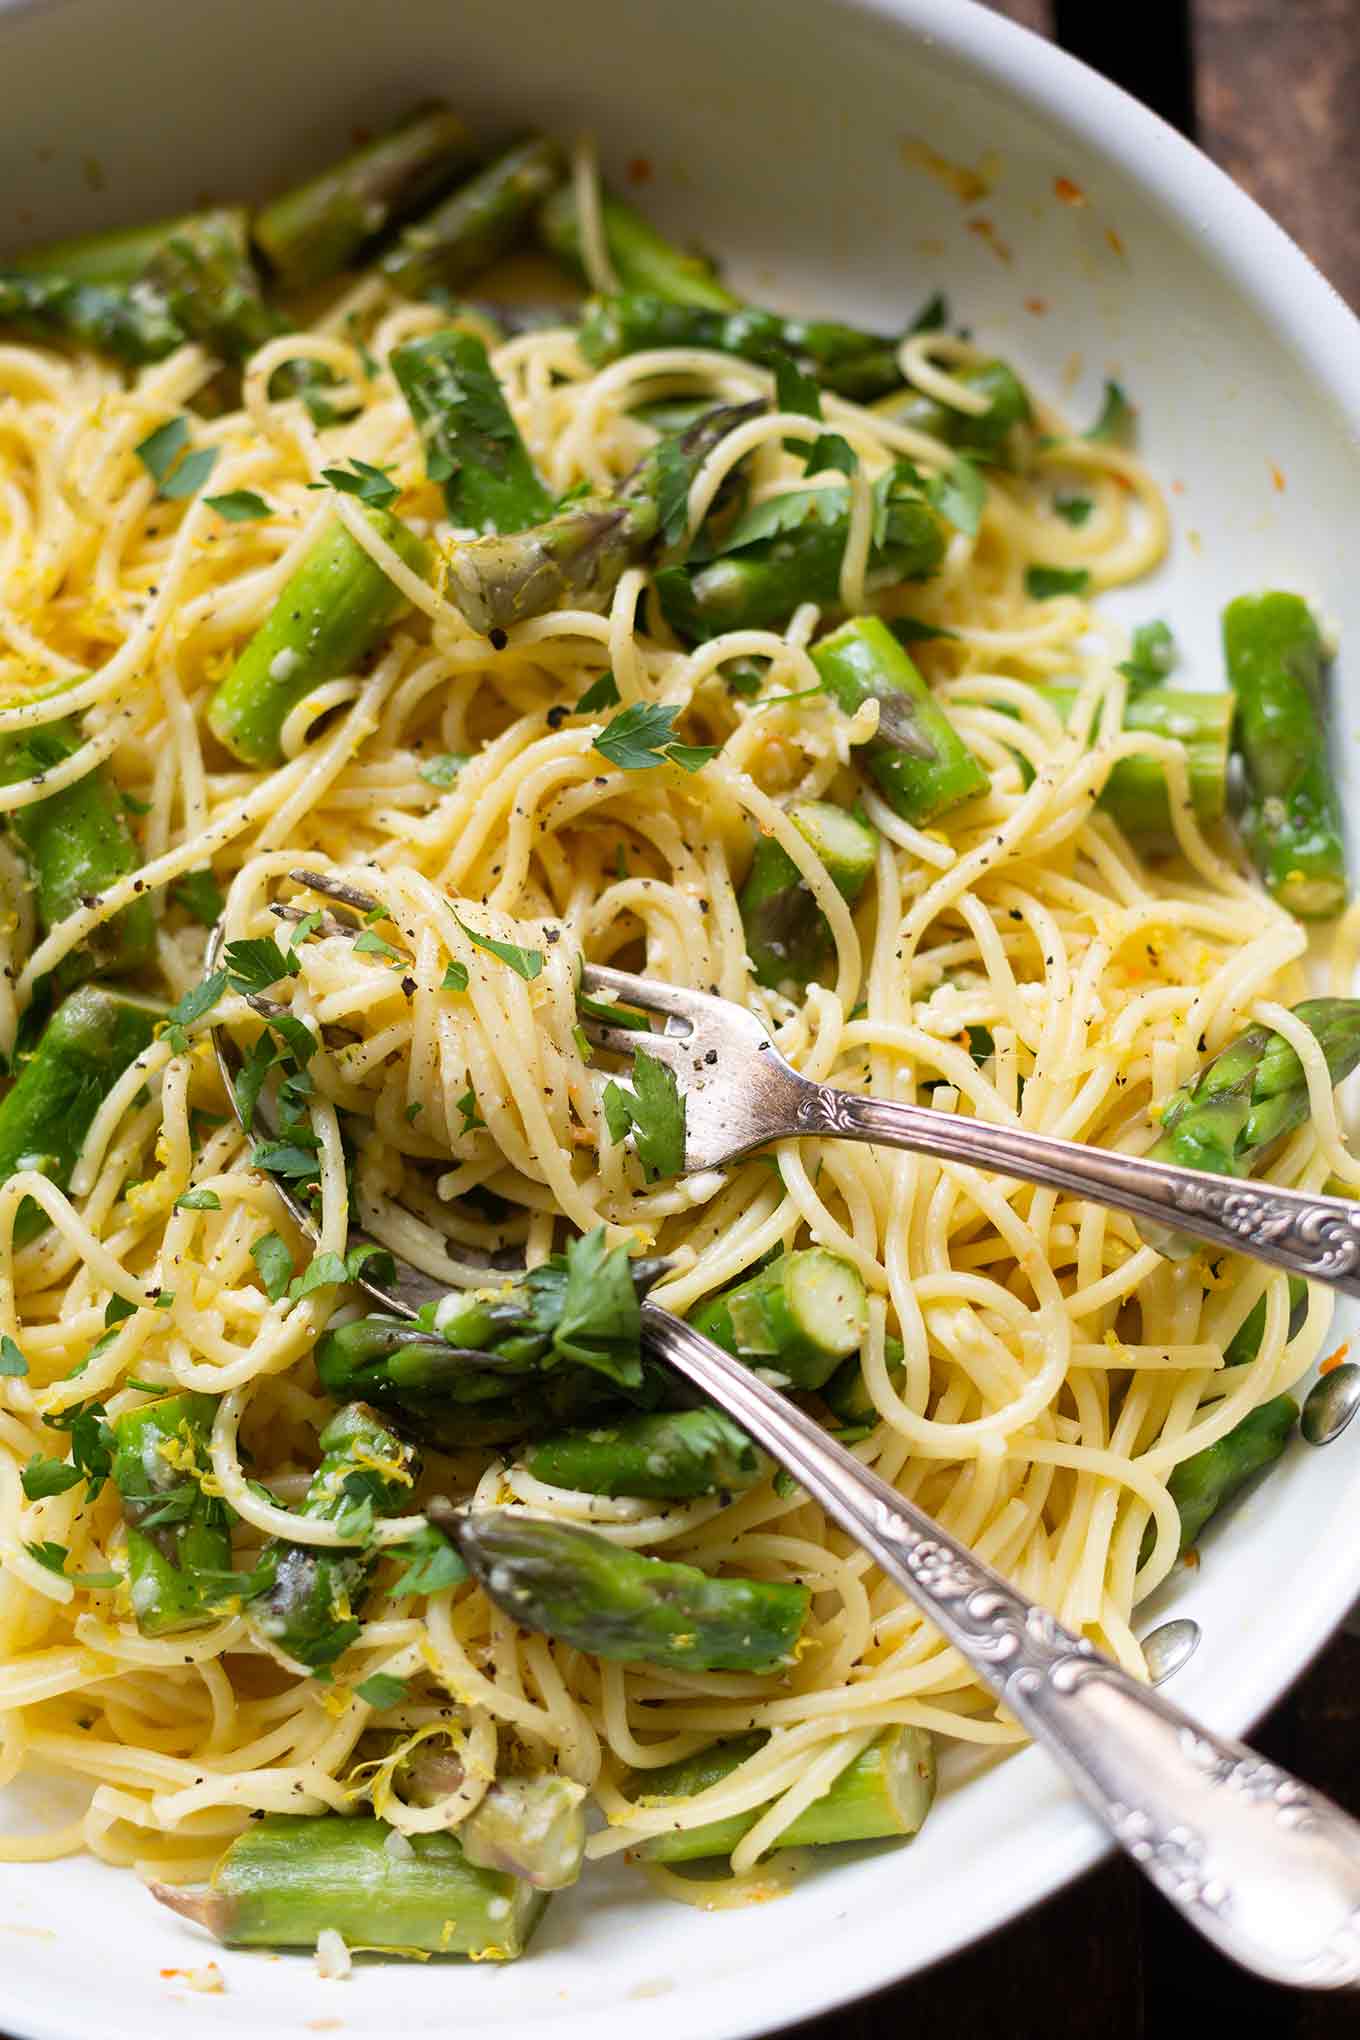 Zitronen-Parmesan-Spaghetti mit grünem Spargel. Dieses schnelle und einfache Pasta-Rezept ist perfekt für den Frühling und absolutes Soulfood! - Kochkarussell.com #spargel #rezept #pasta #einfach